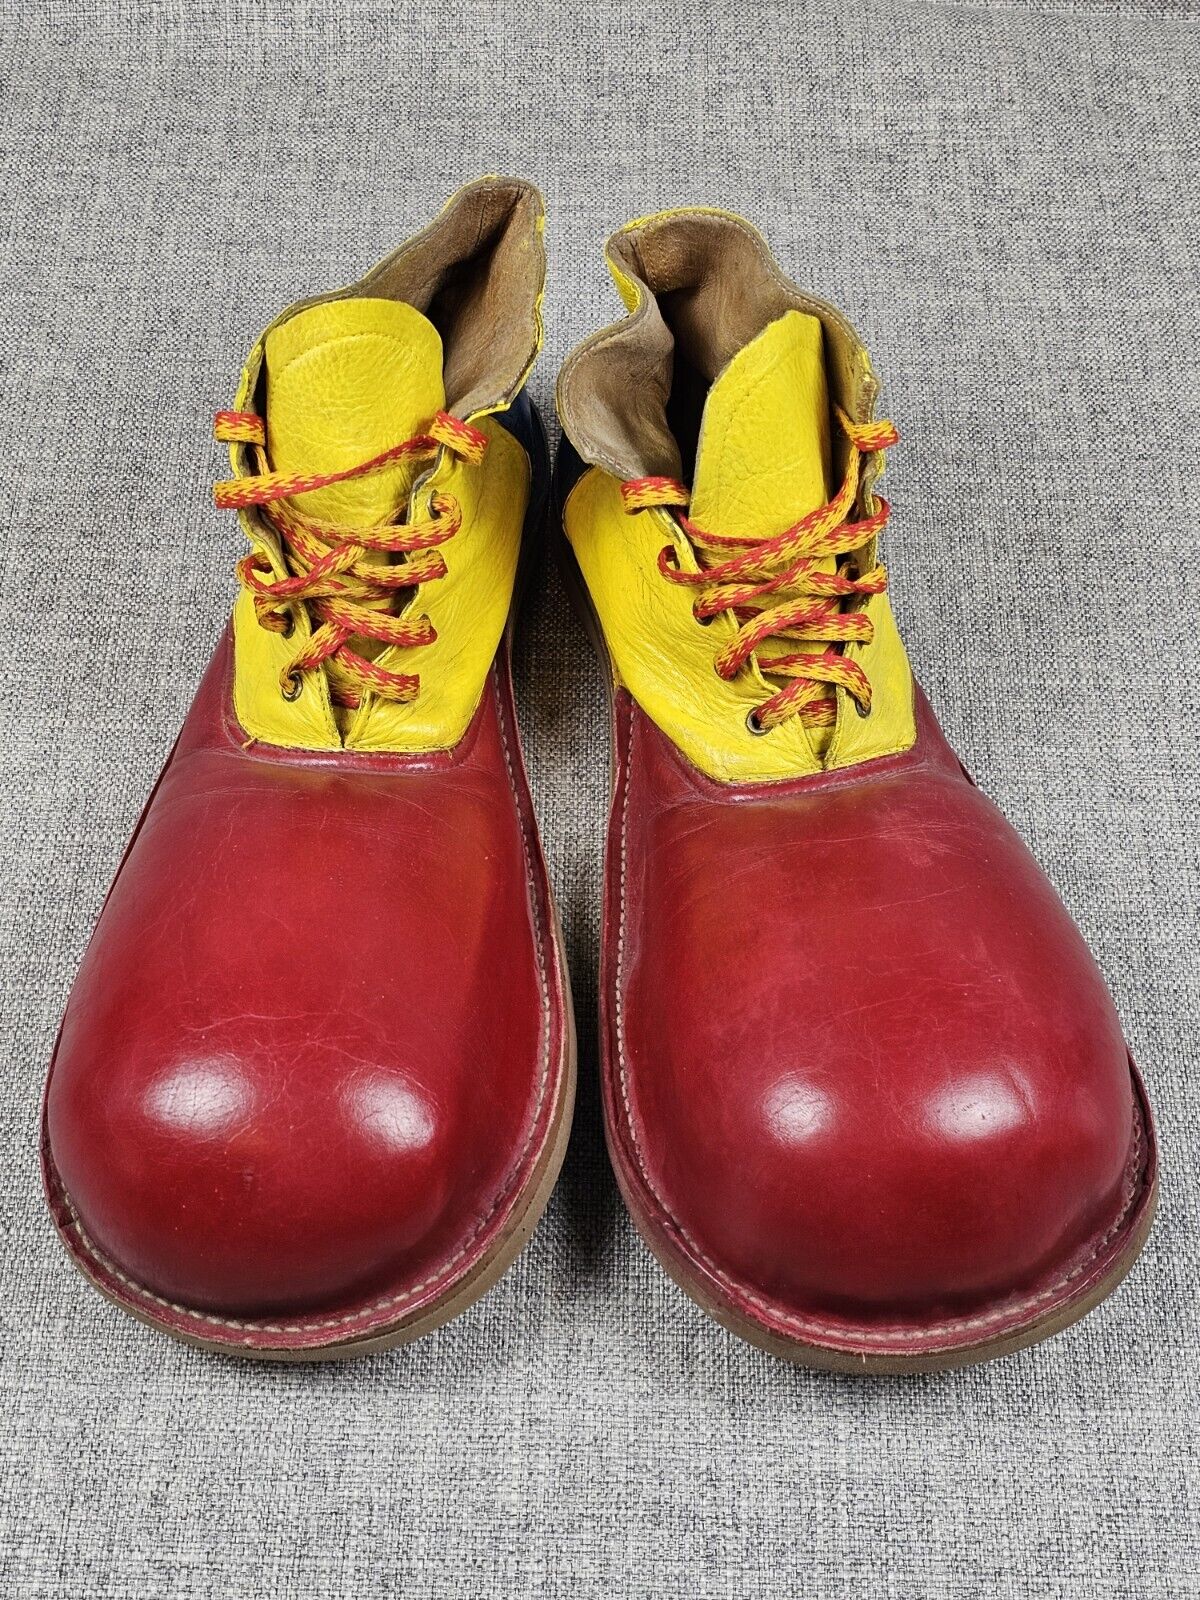 Vintage Spears Specialty Professional Clown Shoes Mens Sz 7 Multicolor Vibram